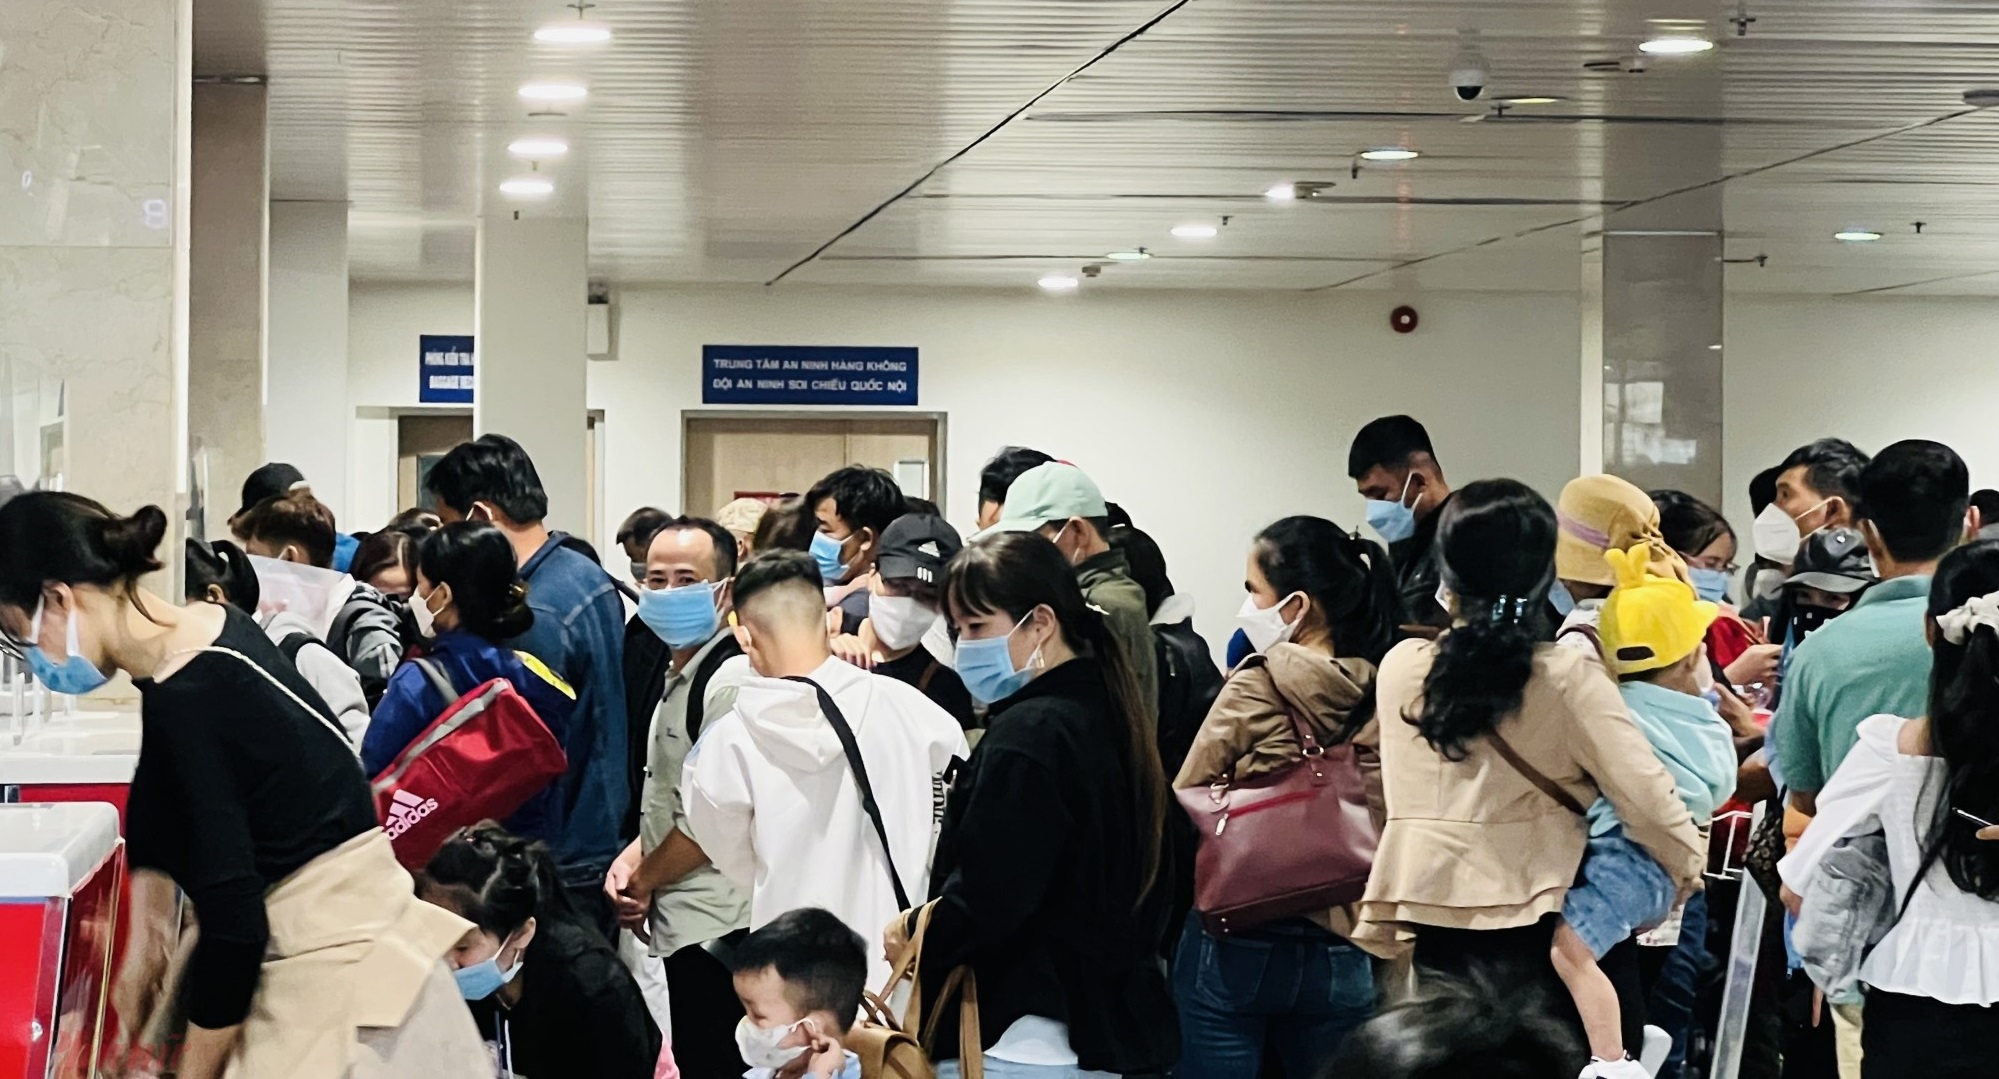 Ghi nhận của phóng viên báo Phụ Nữ TPHCM vào trưa 24/1, tại các sảnh đi sân bay Tân Sơn Nhất vẫn ghi nhận rất đông khách sếp hàng làm thủ tục, check - in rời TPHCM về quê.